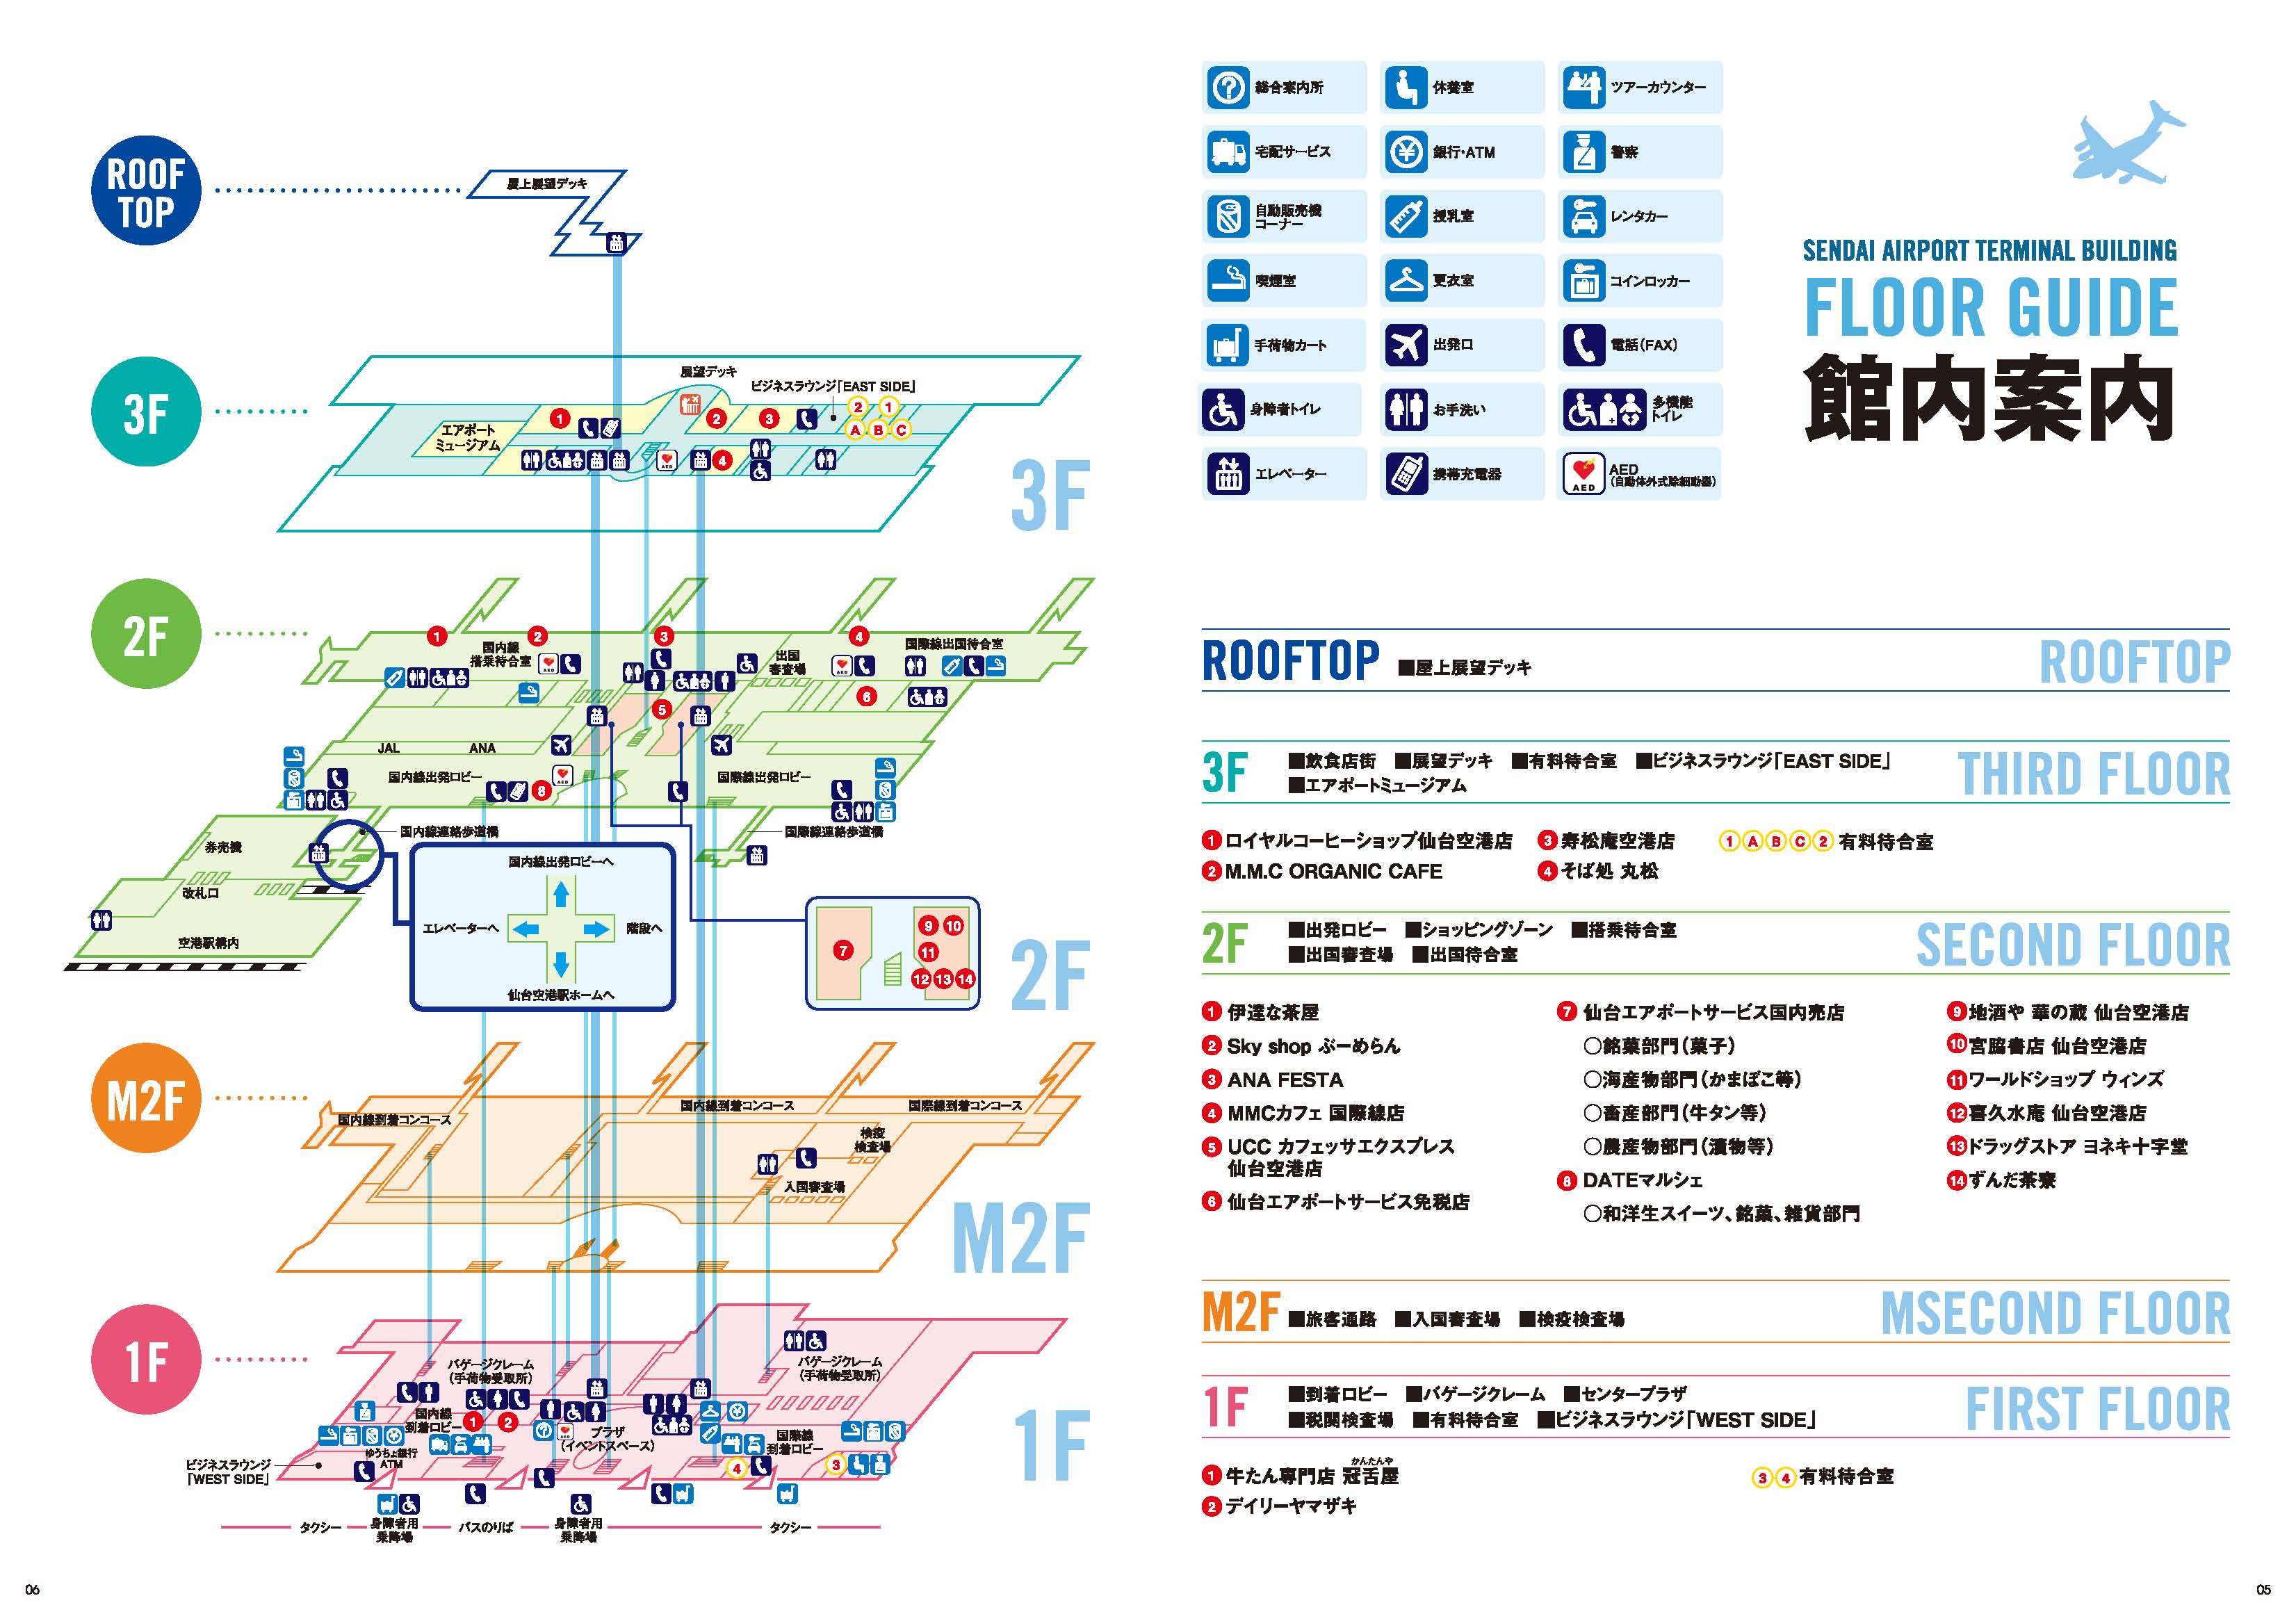 仙台机场的航站楼及服务设施示意图